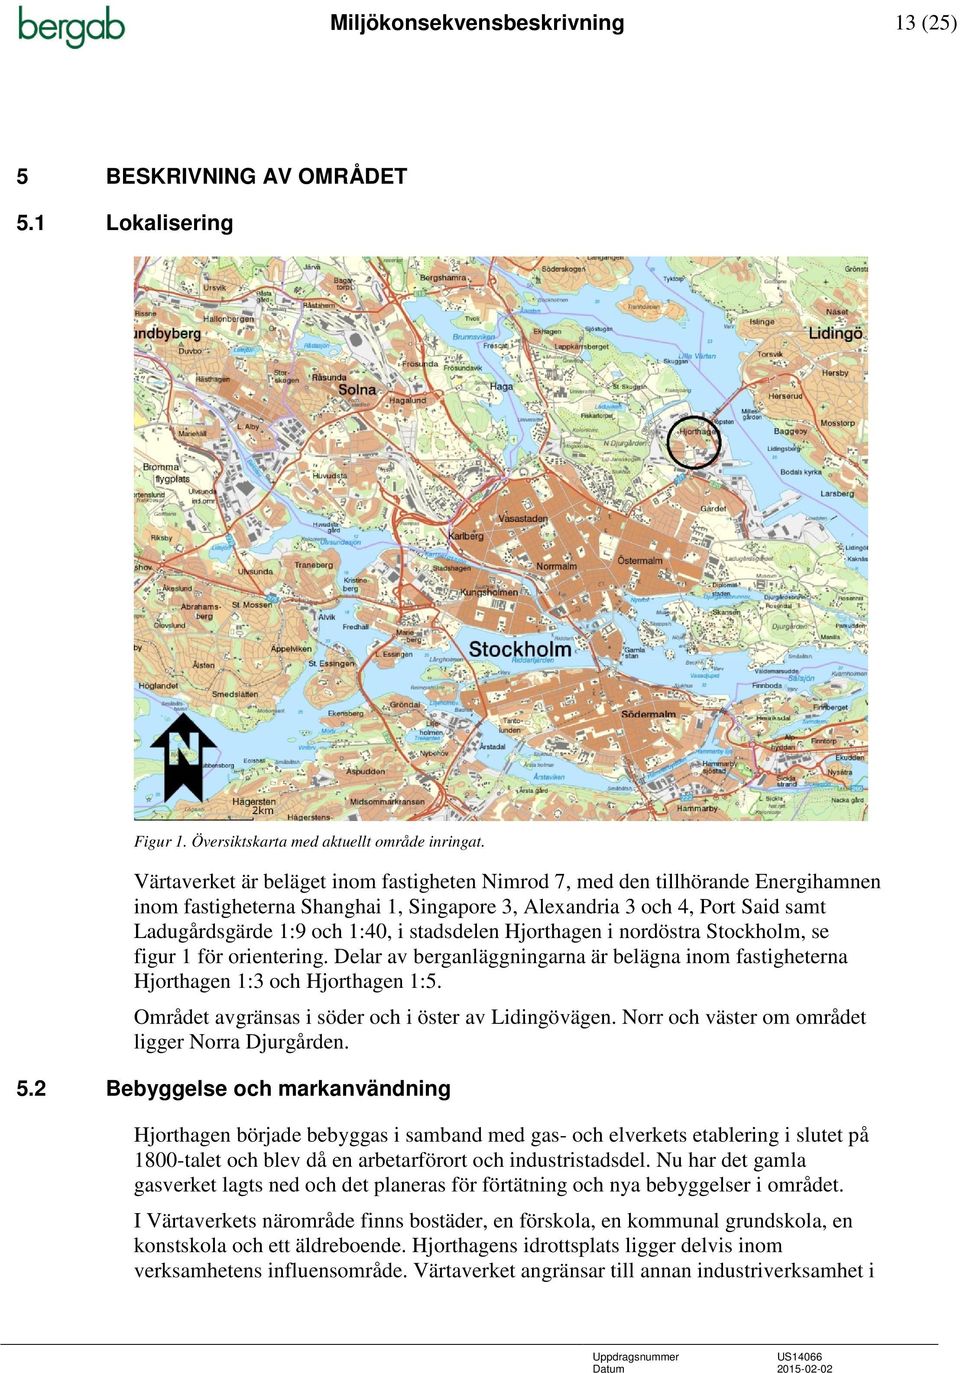 stadsdelen Hjorthagen i nordöstra Stockholm, se figur 1 för orientering. Delar av berganläggningarna är belägna inom fastigheterna Hjorthagen 1:3 och Hjorthagen 1:5.